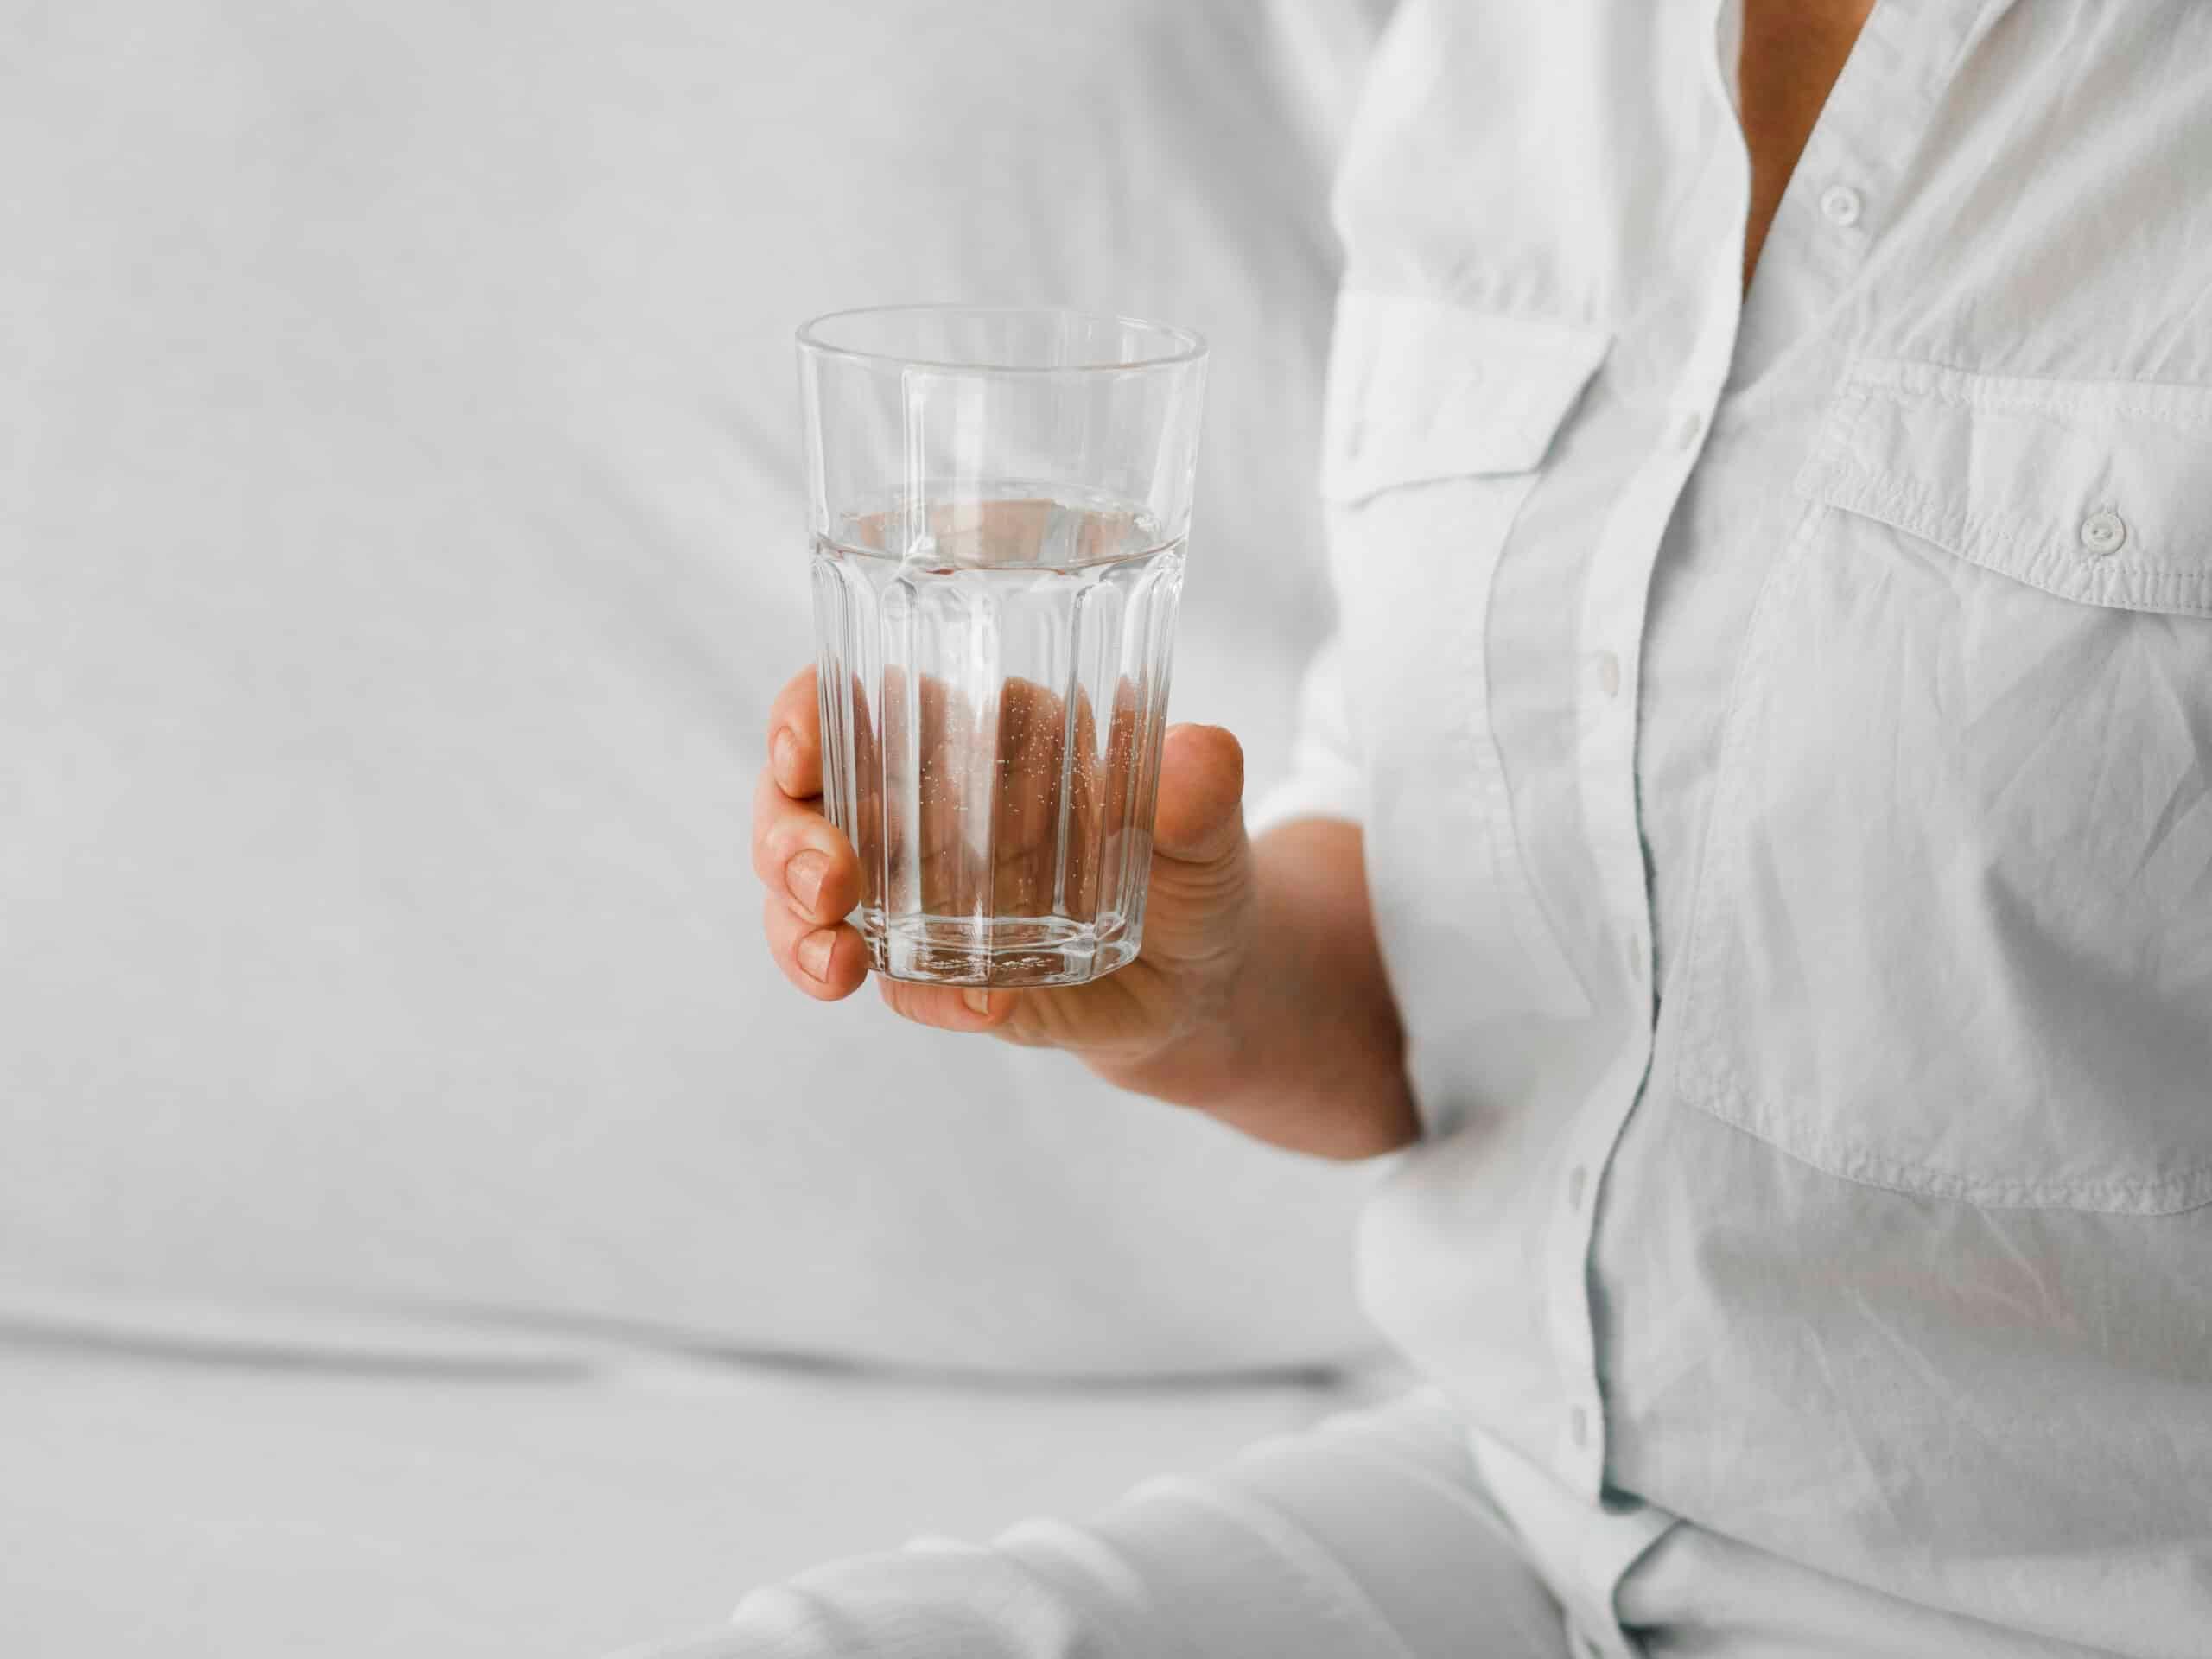 Cuidar da hidratação é essencial para evitar fadiga, confusão mental e riscos à saúde.